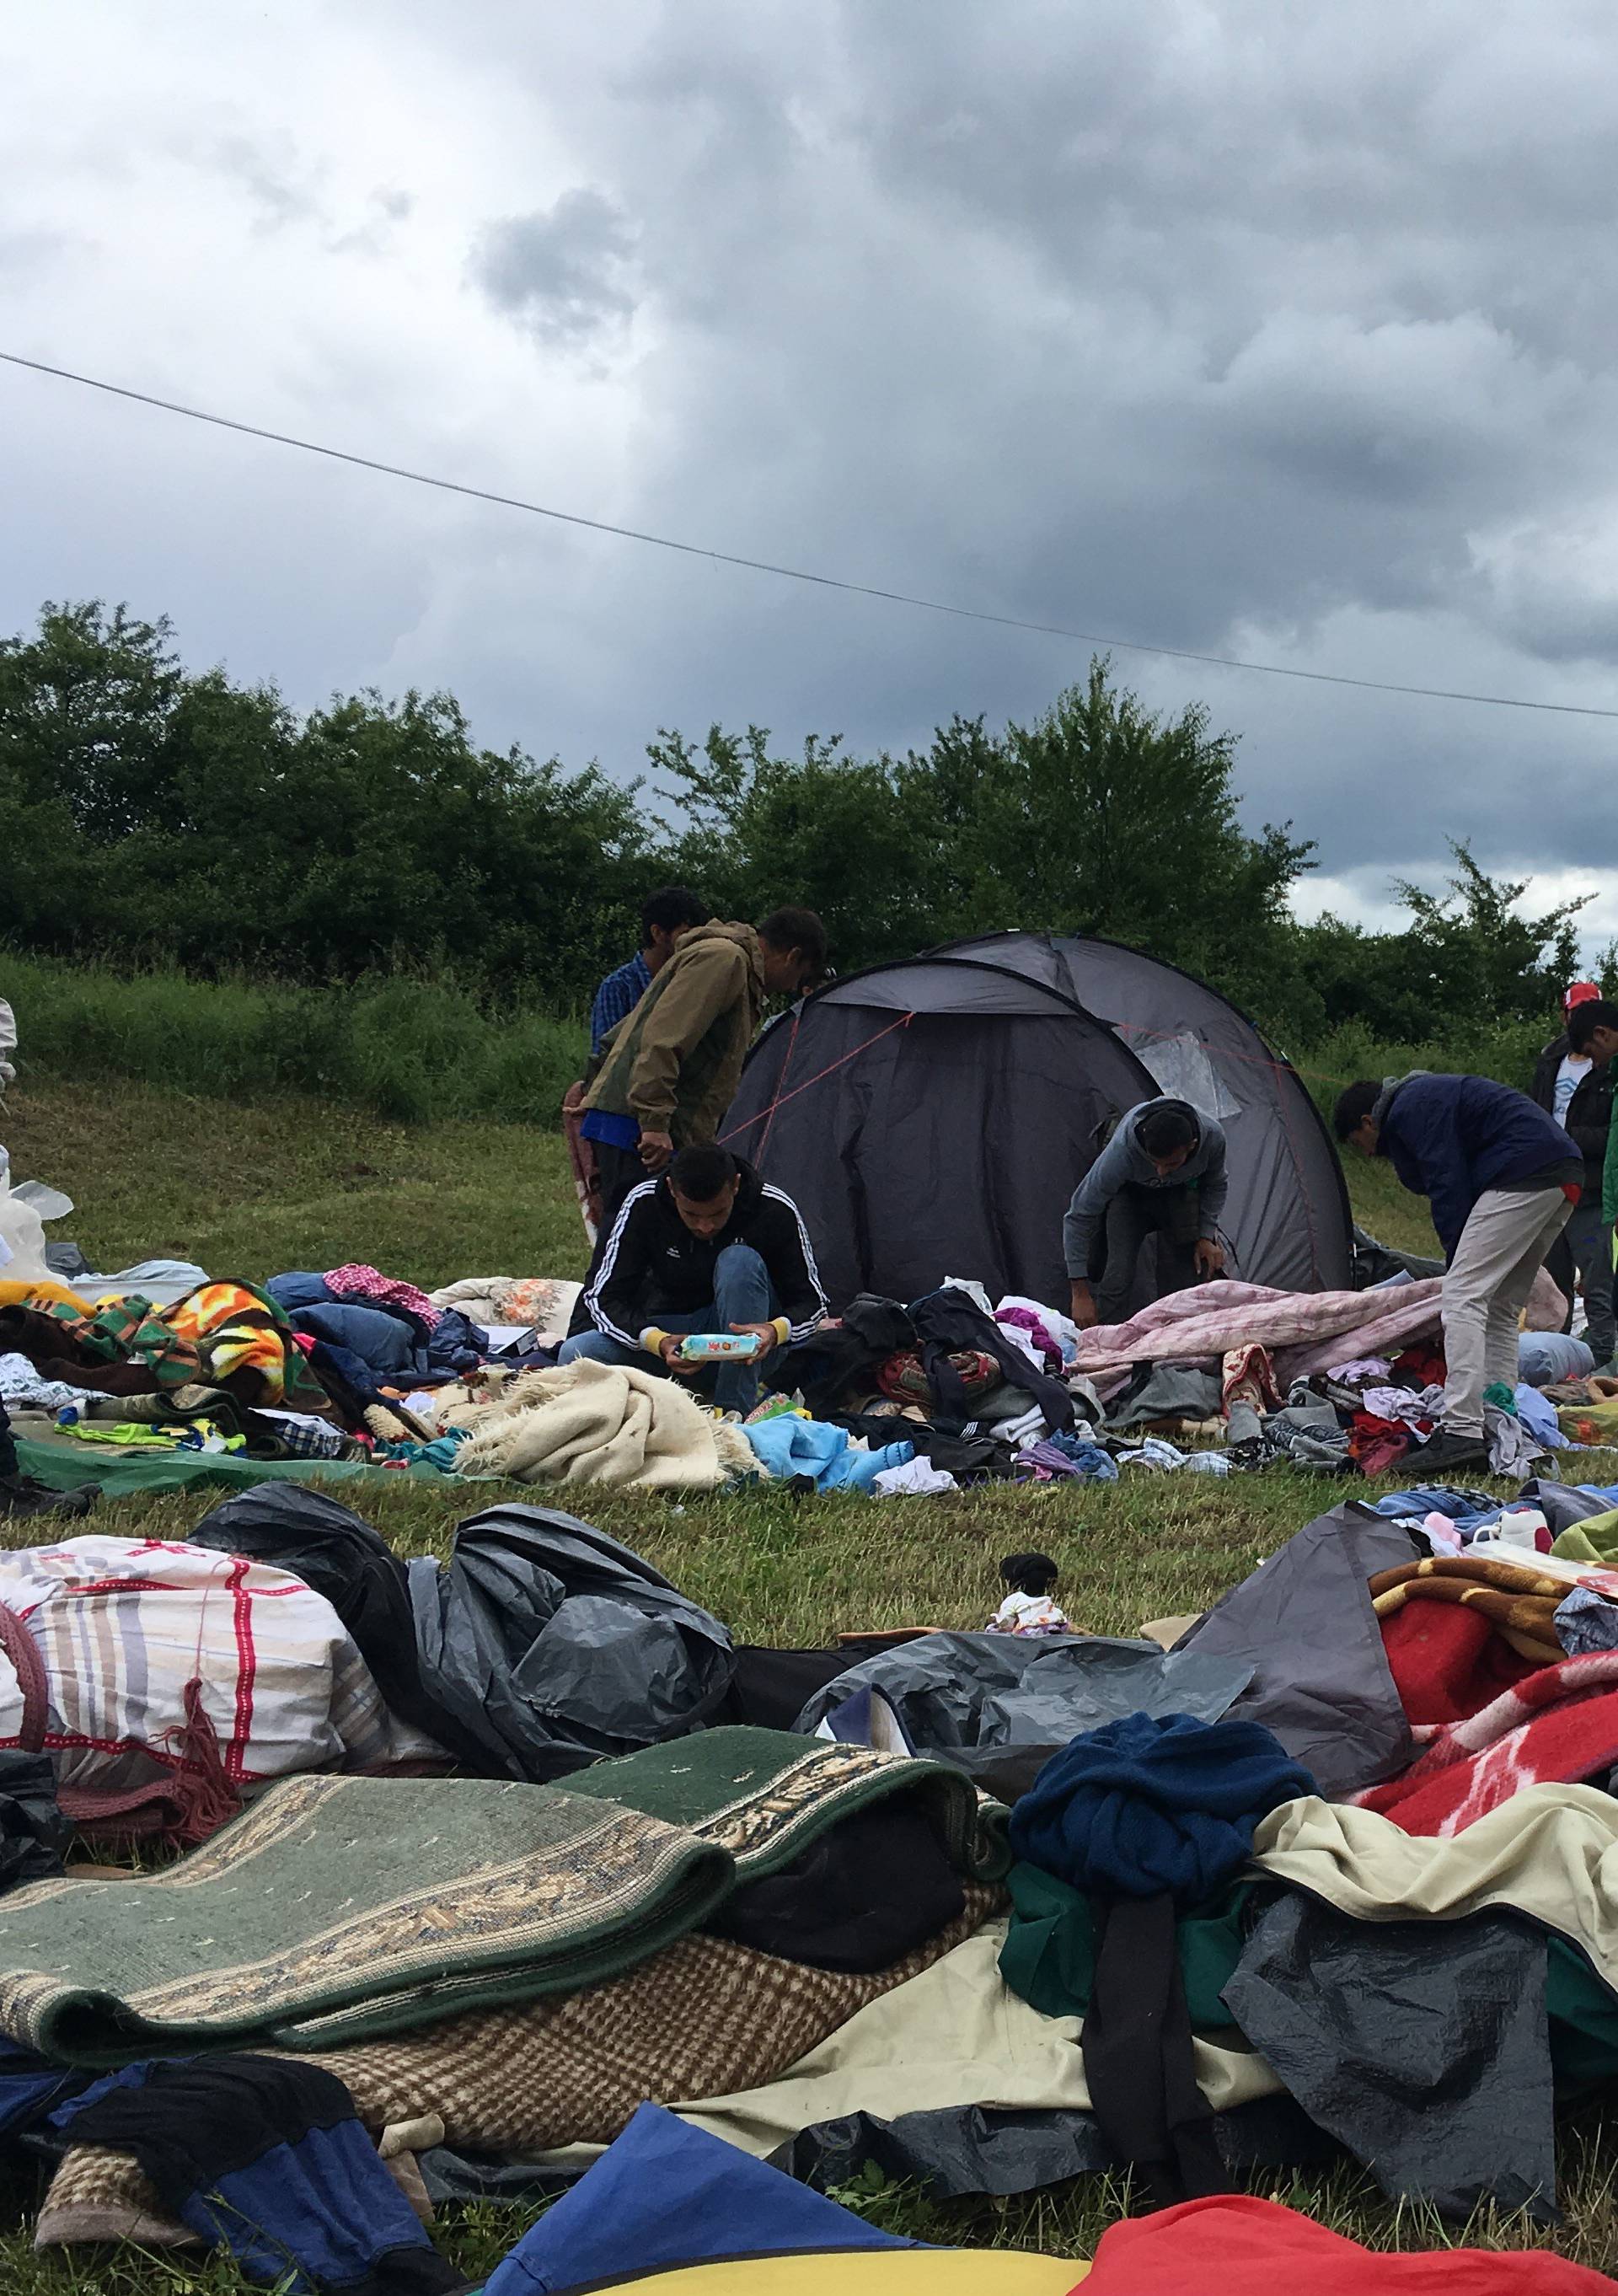 Uz hrvatsku granicu: Epidemija svraba je među migrantima...